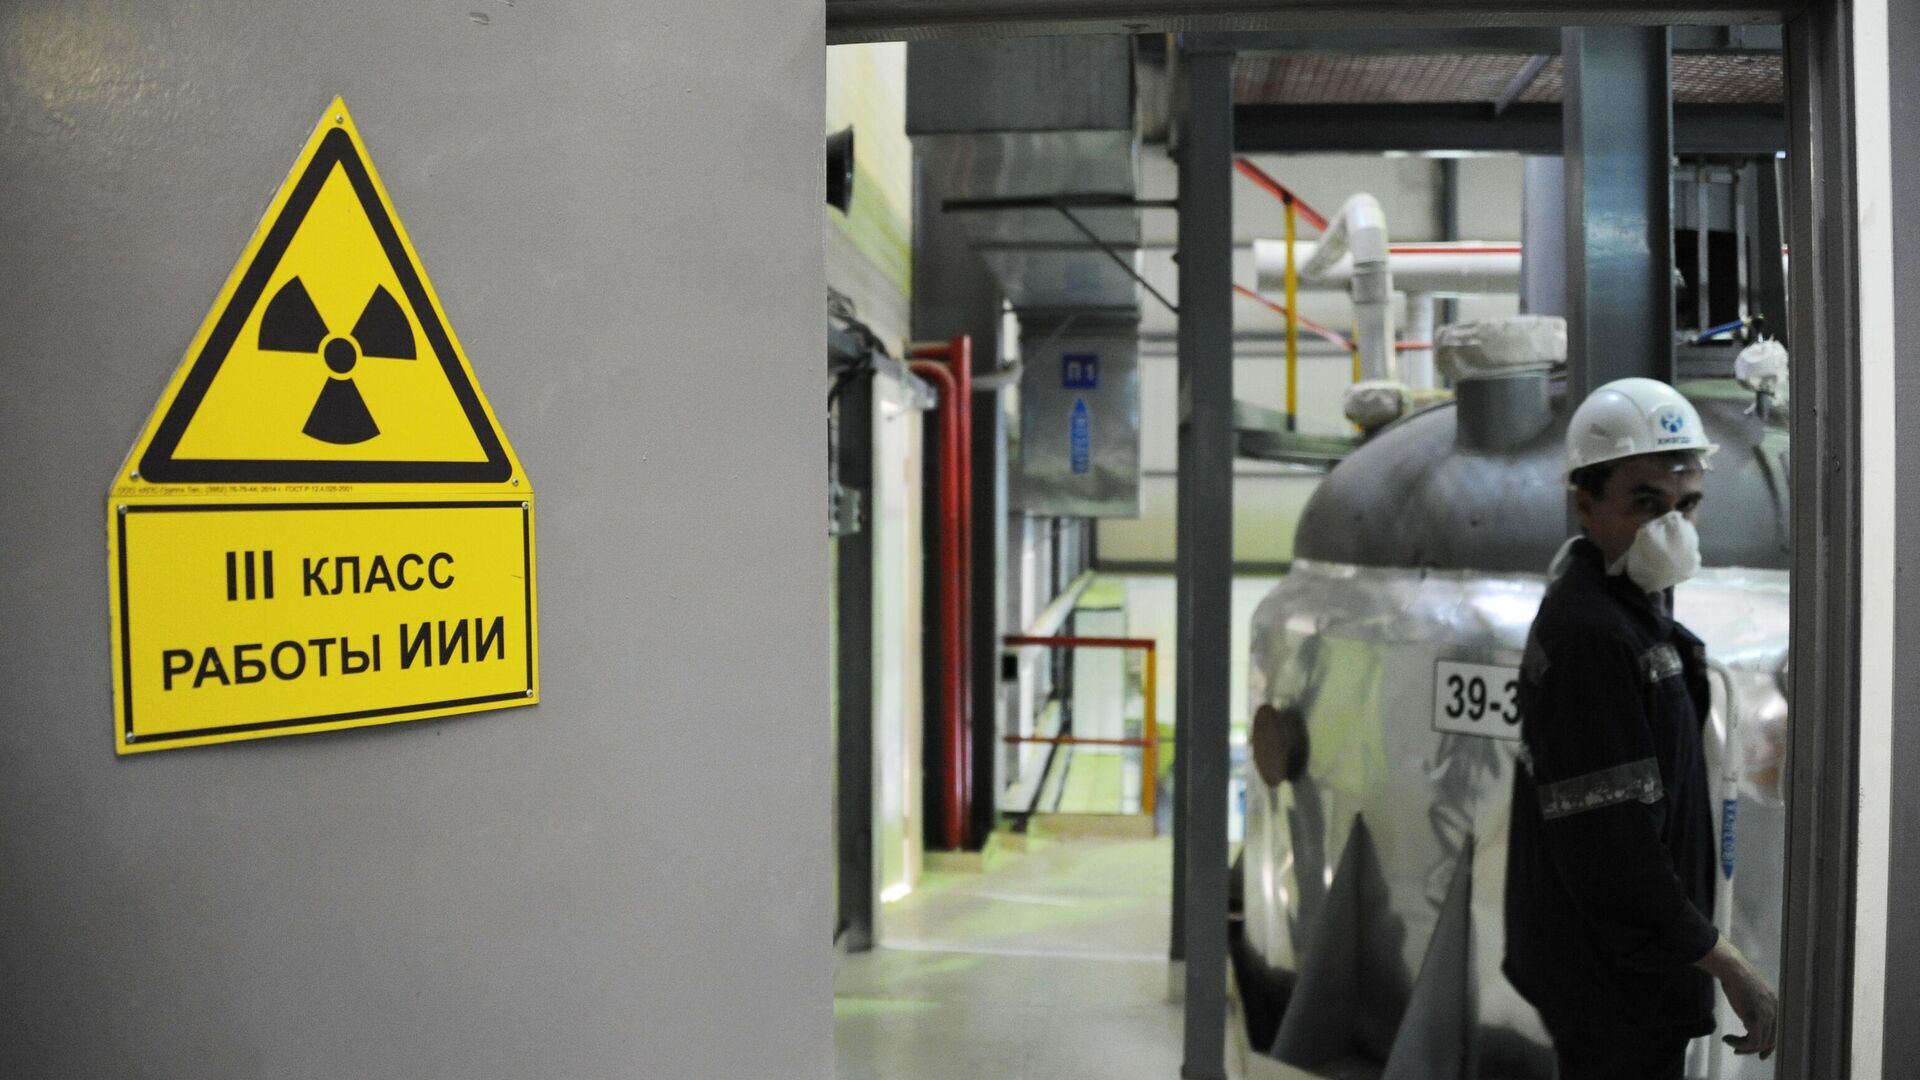 الطاقة الأمريكية تبحث عن مقاولين لإنتاج اليورانيوم المخصب محليا ليحل محل الروسي